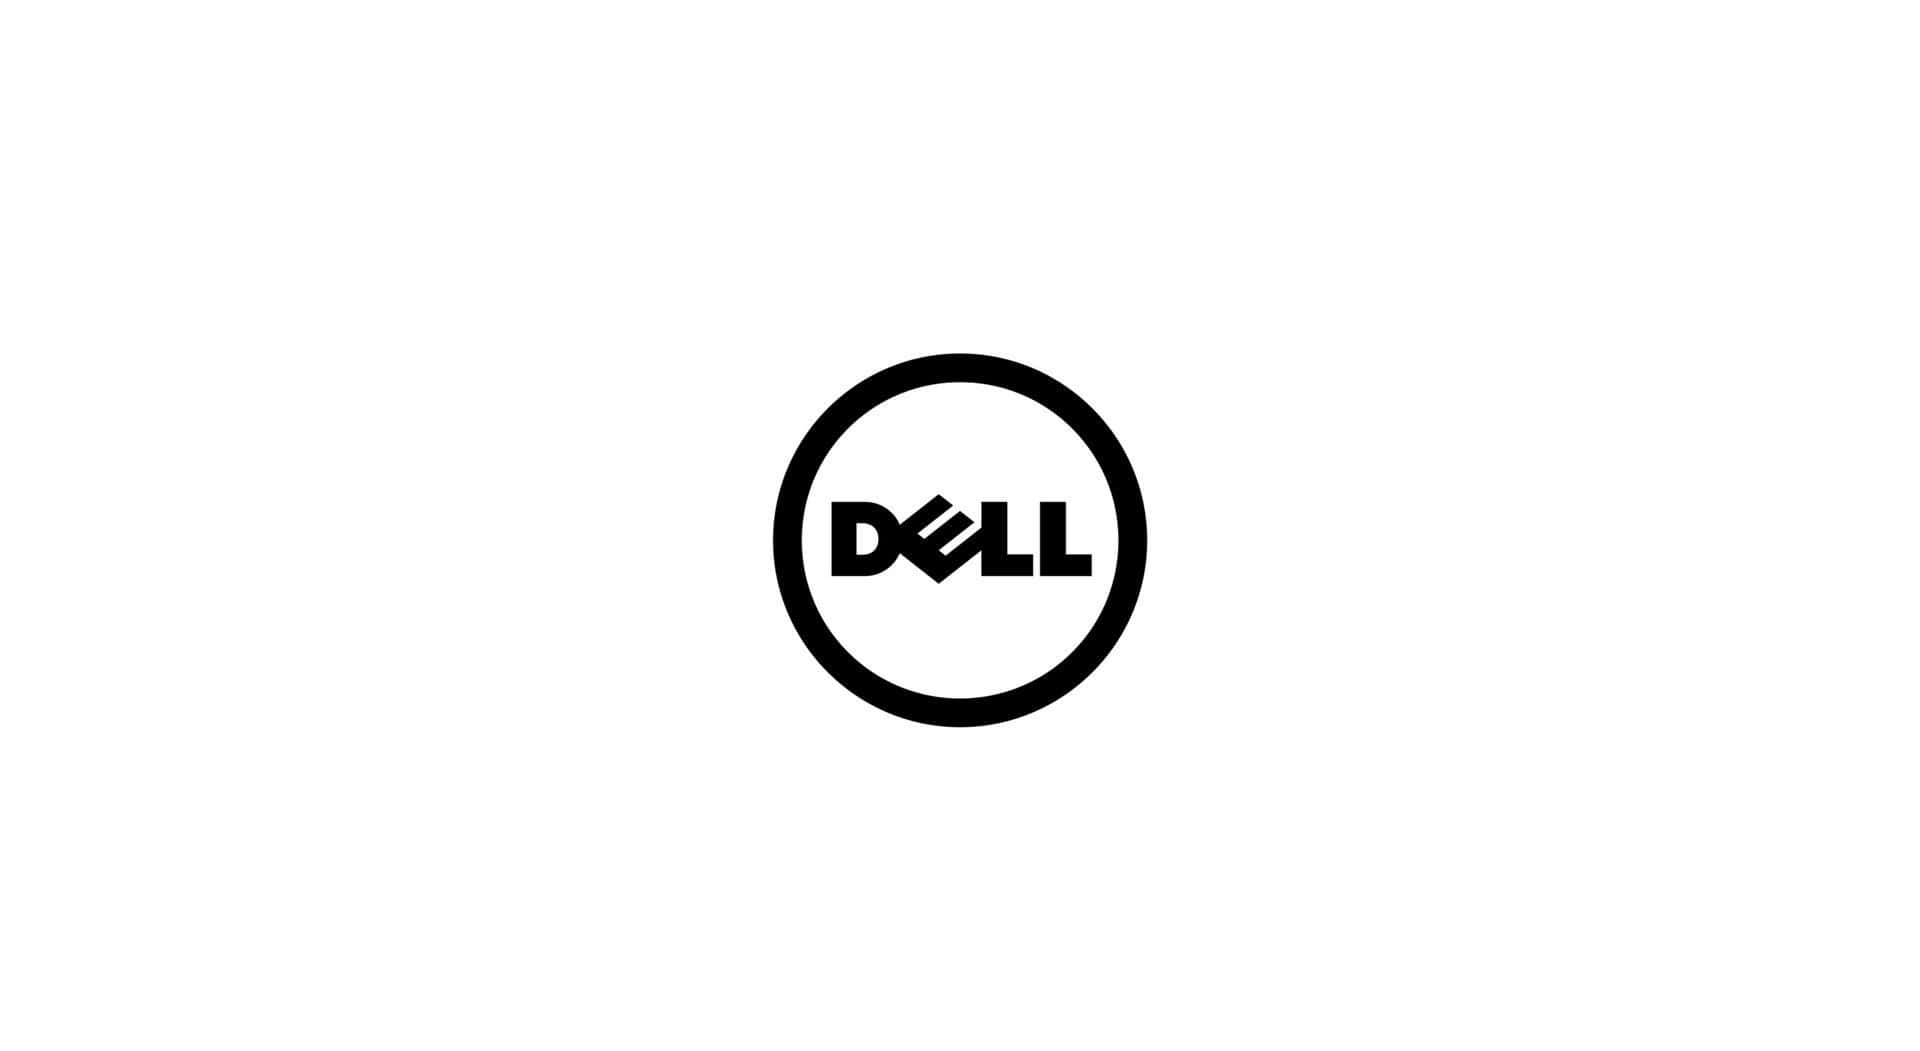 Elpoder De La Tecnología De Dell